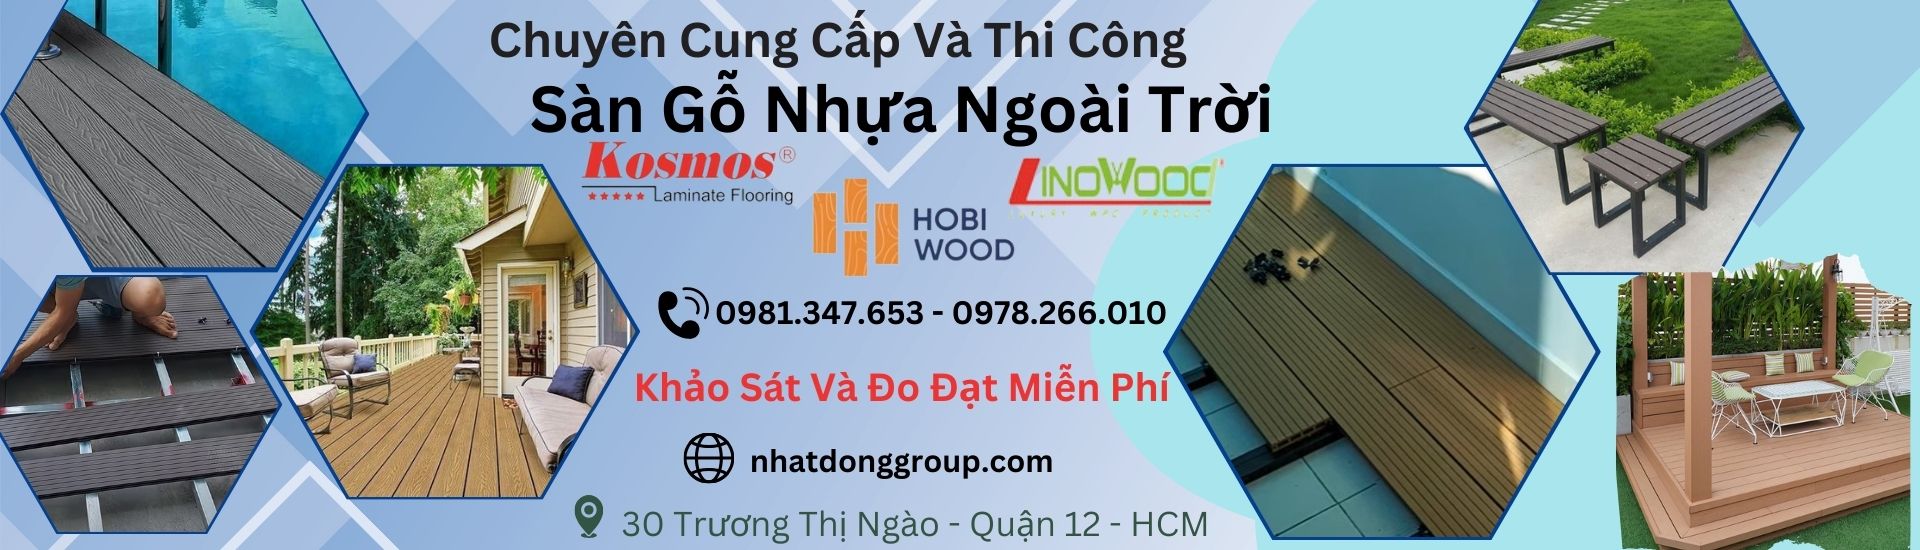 Sàn gỗ nhựa ngoài trời đẹp, chính hãng Tại Hồ Chí Minh,Long An , Bình Dương, Đồng Nai, Cần Thơ, Bạc Liêu